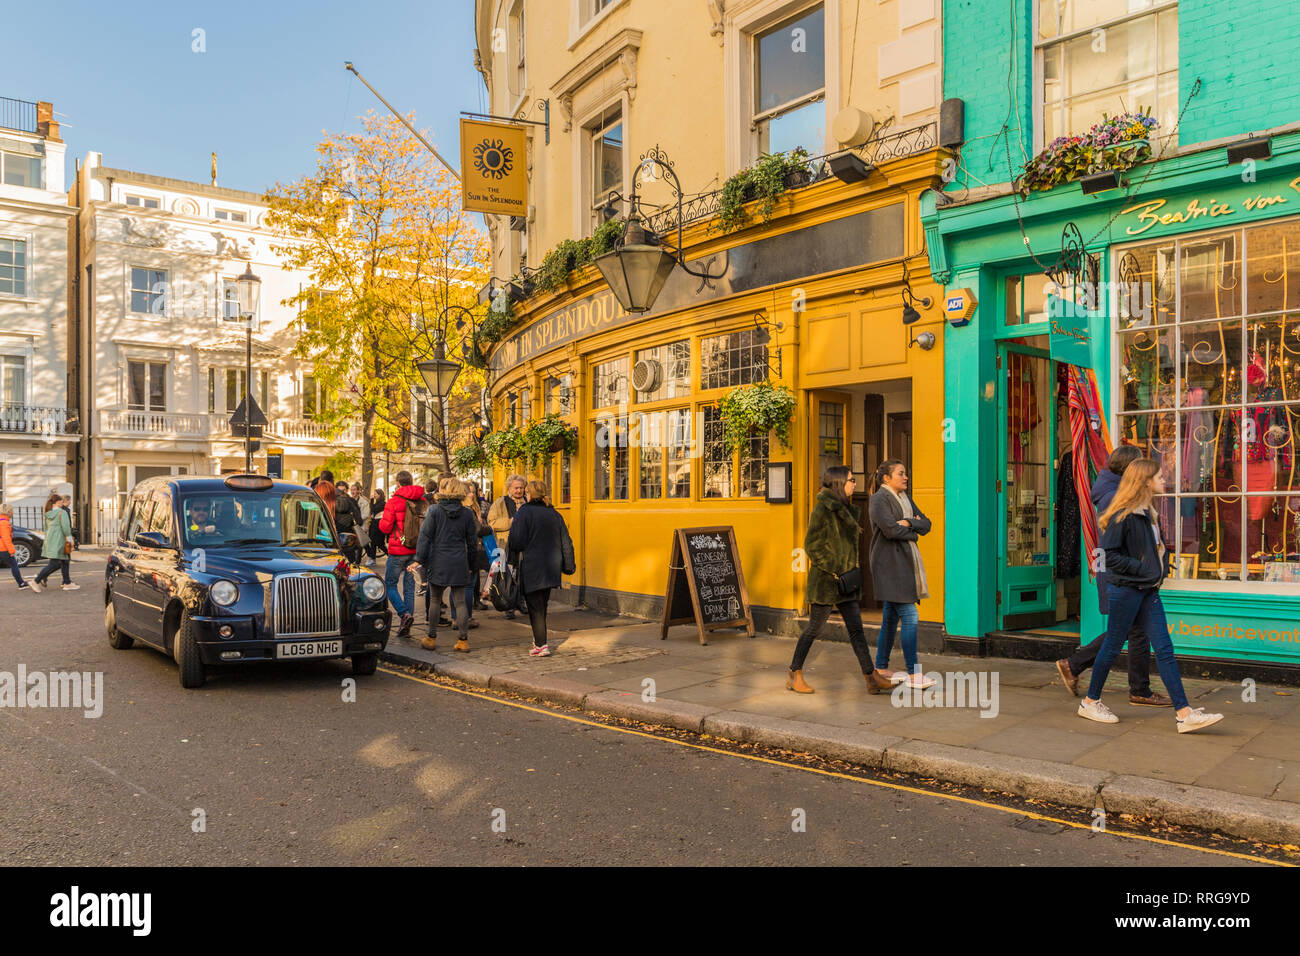 Une scène de rue sur Portobello Road, dans le quartier de Notting Hill, Londres, Angleterre, Royaume-Uni, Europe Banque D'Images